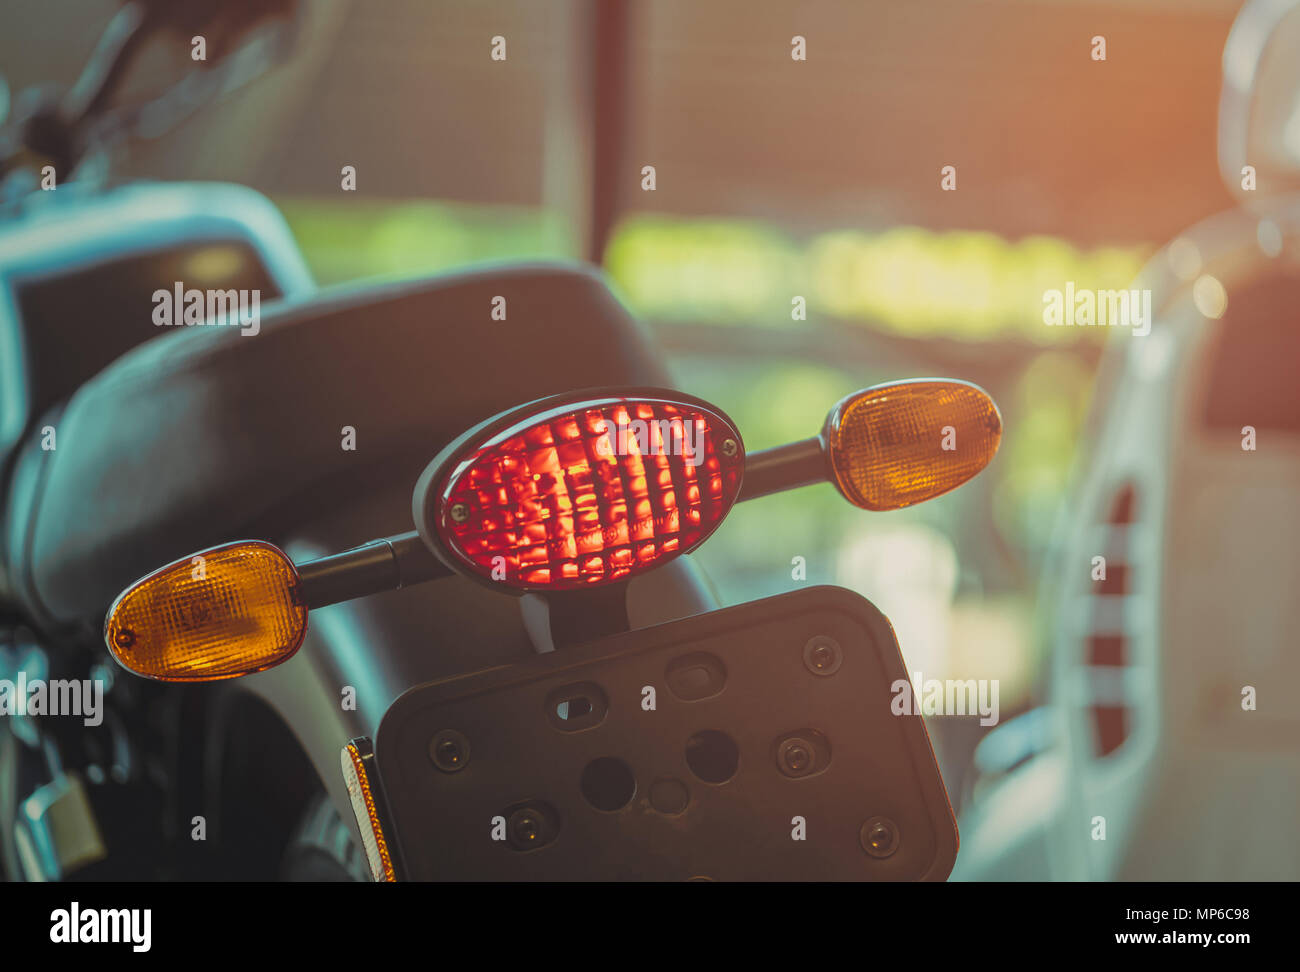 Ánh đèn phanh mạnh mẽ của chiếc xe máy đã cứu một mạng sống. Đó là lý do vì sao, khi điều khiển xe, chúng ta cần phải chú ý đến những chi tiết nhỏ nhất. Cùng ngắm nhìn những bức ảnh về đèn phanh xe moto để hiểu rõ hơn về tầm quan trọng và cách sử dụng hợp lý của nó.